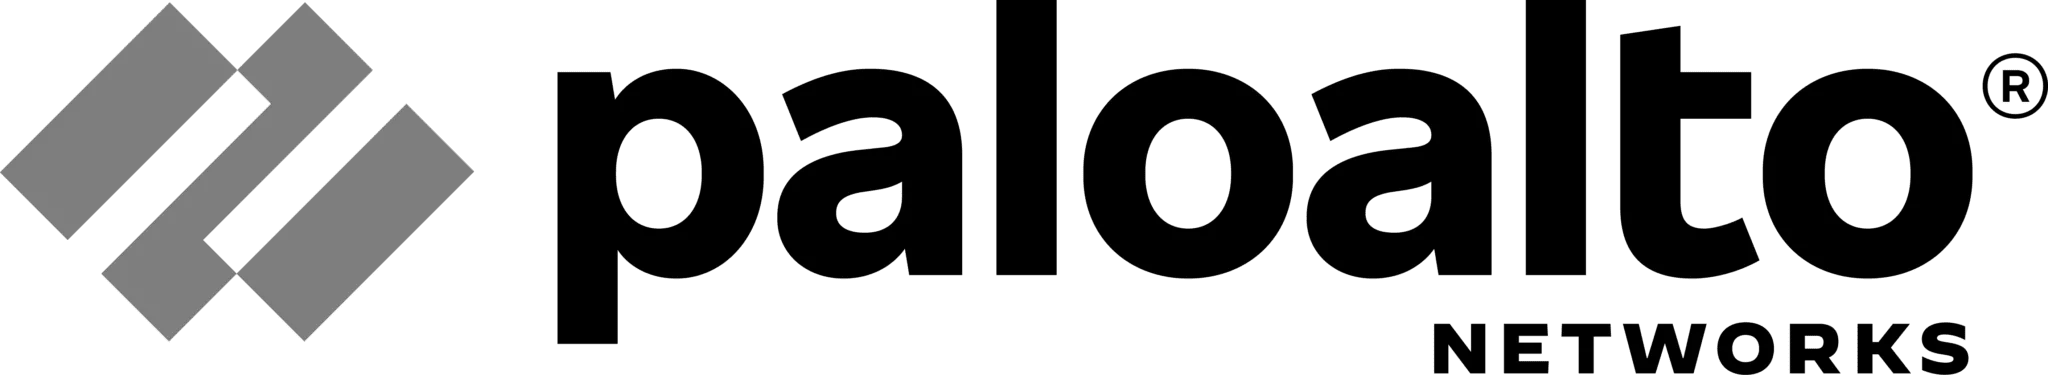 Logo-Palo-alto-networks-Black-2048x375